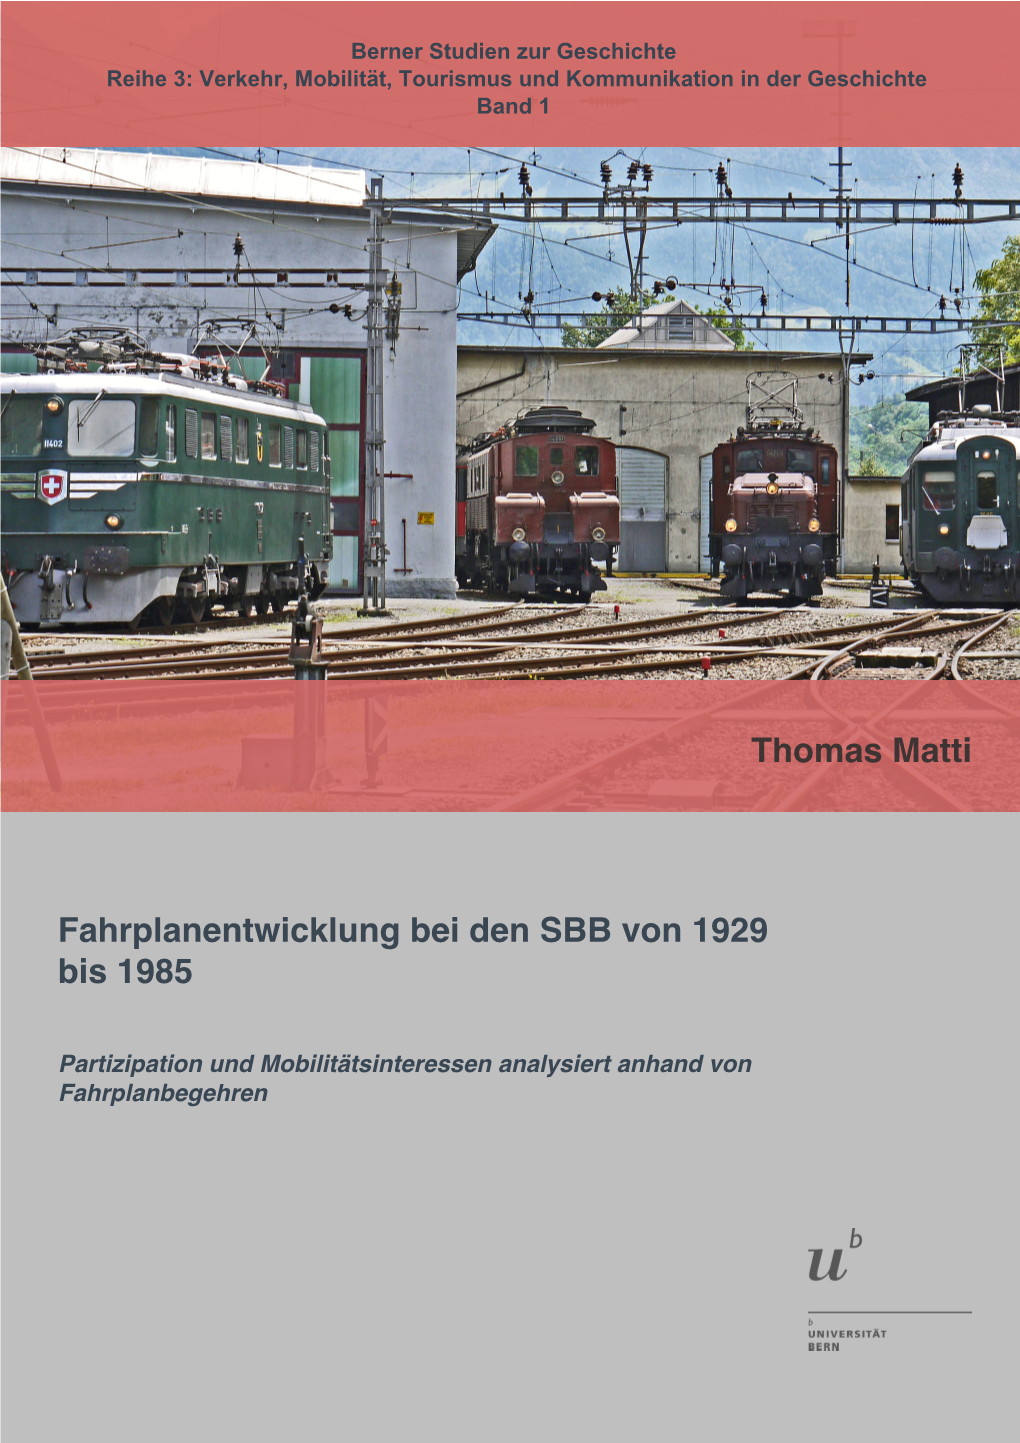 Fahrplanentwicklung Bei Den SBB Von 1929 Bis 1985 Thomas Matti